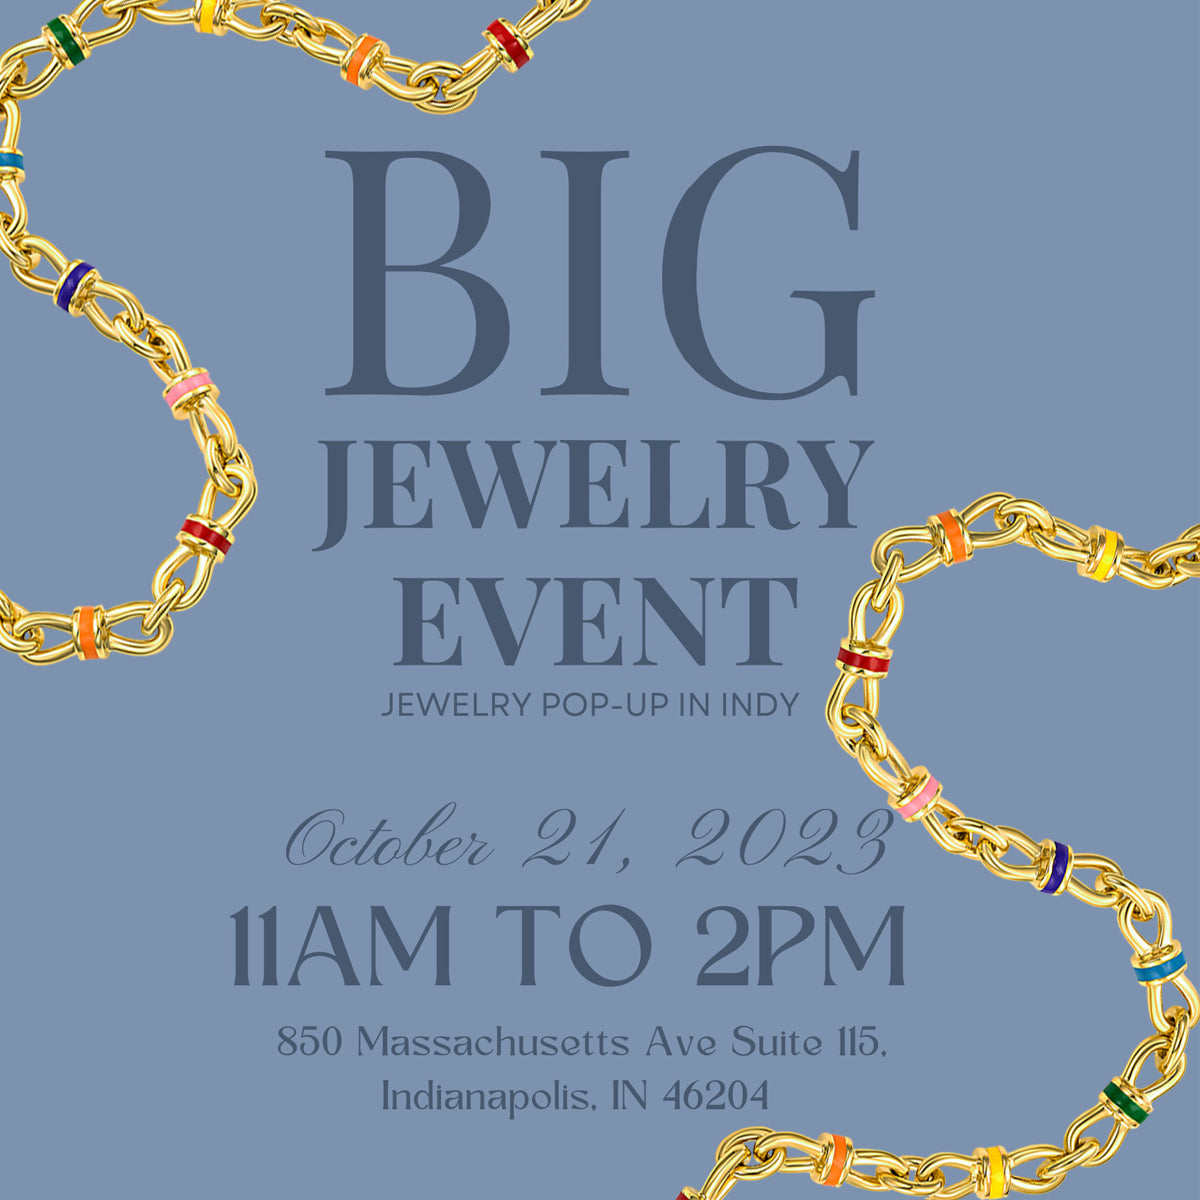 Big Jewelry Event